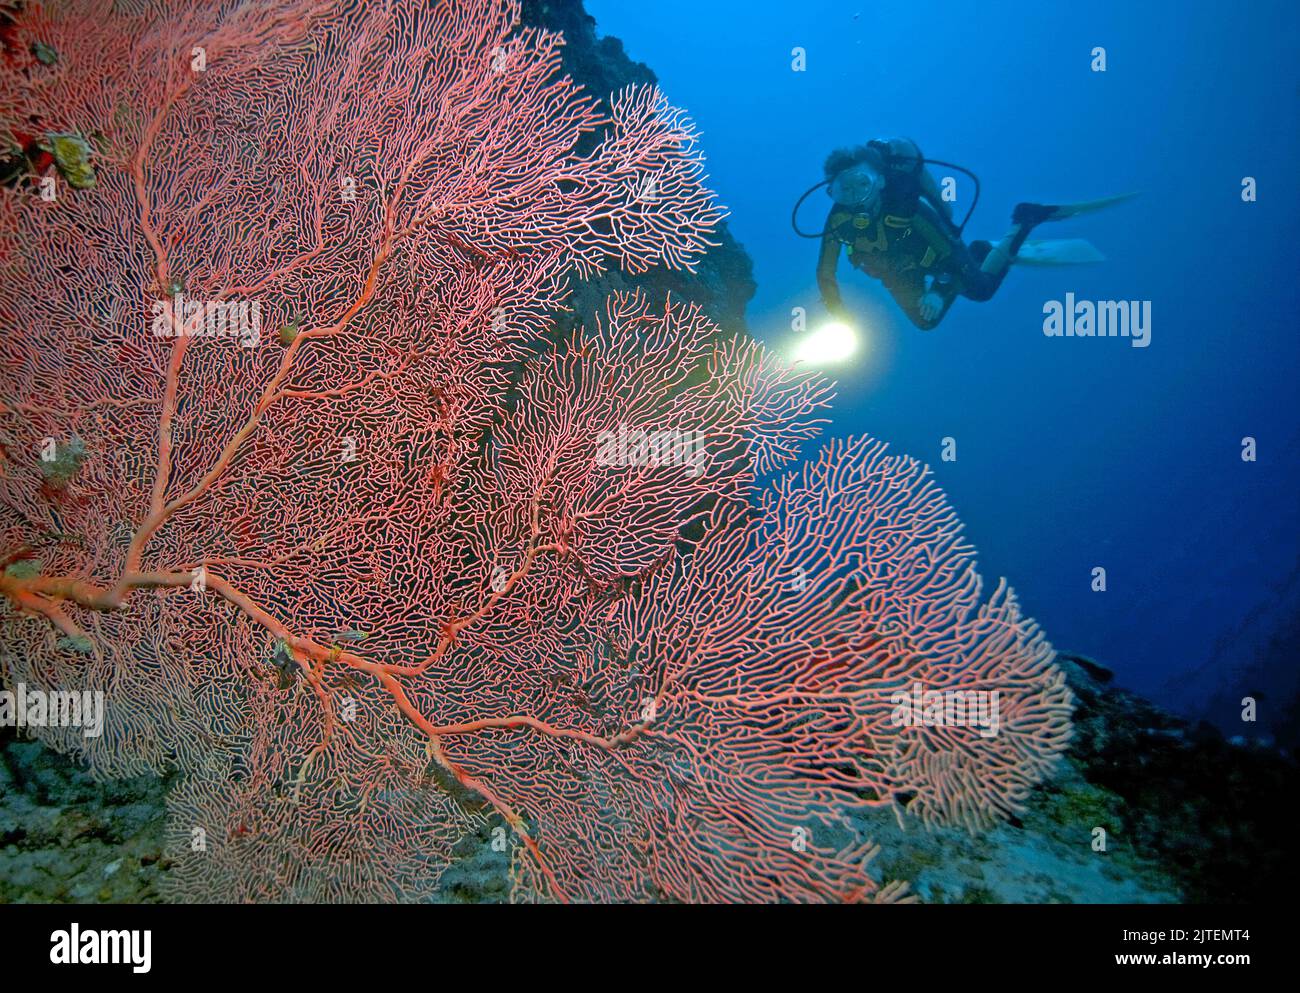 Scuba diver in una barriera corallina con i tifosi del Giant Sea (Annella mollis), l'atollo di Raa, le Maldive, l'Oceano Indiano, l'Asia Foto Stock